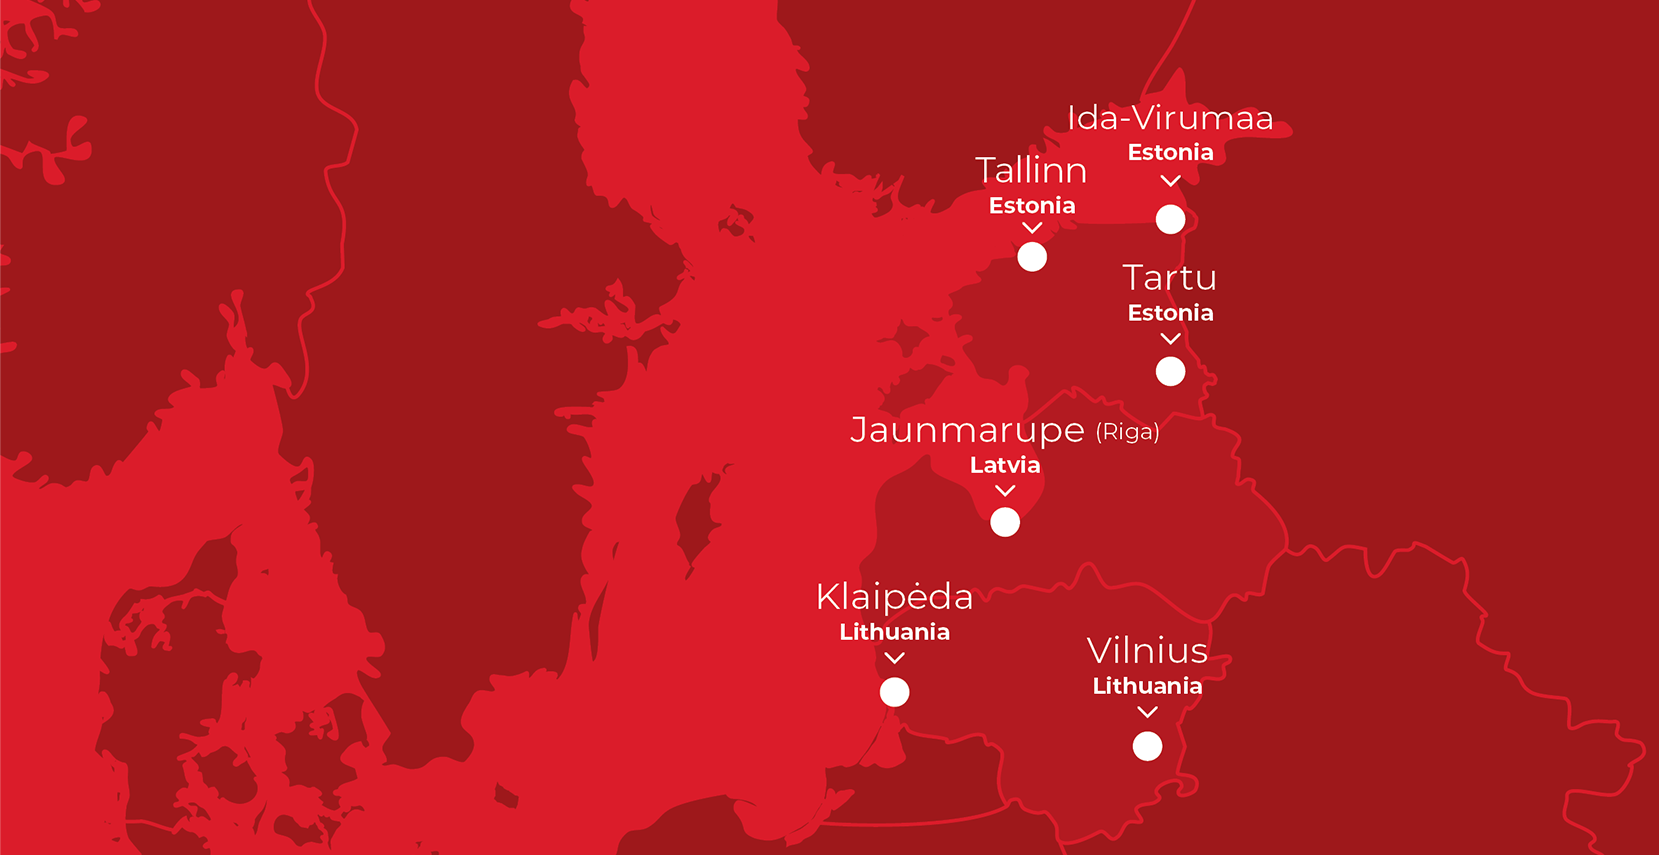 Technobalt service network in the Baltics